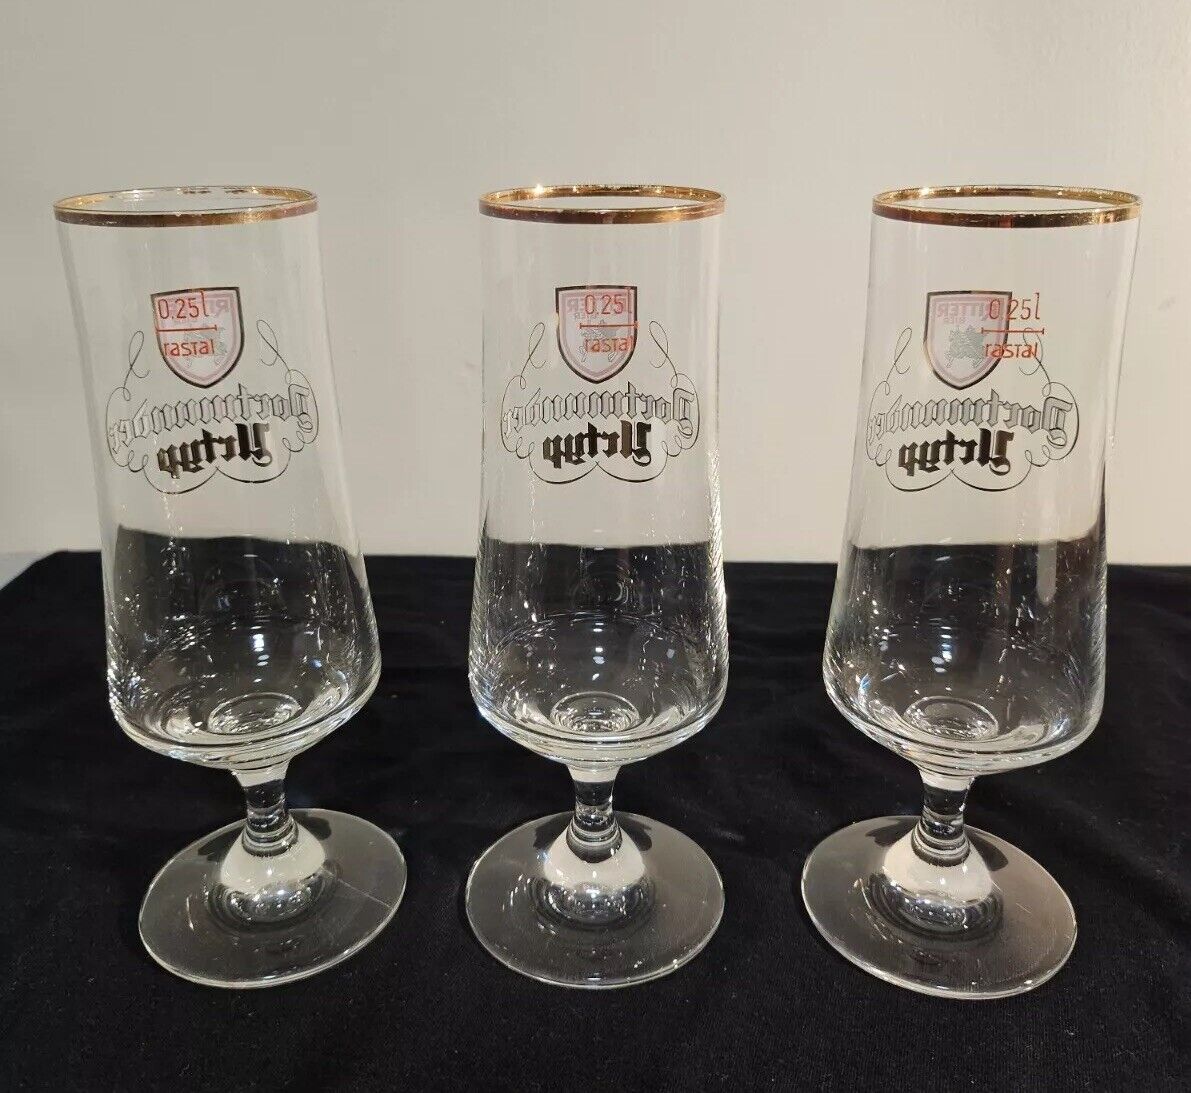 Authentic Dortmander Urtyp Vintage German Beer Glasses- A Trio